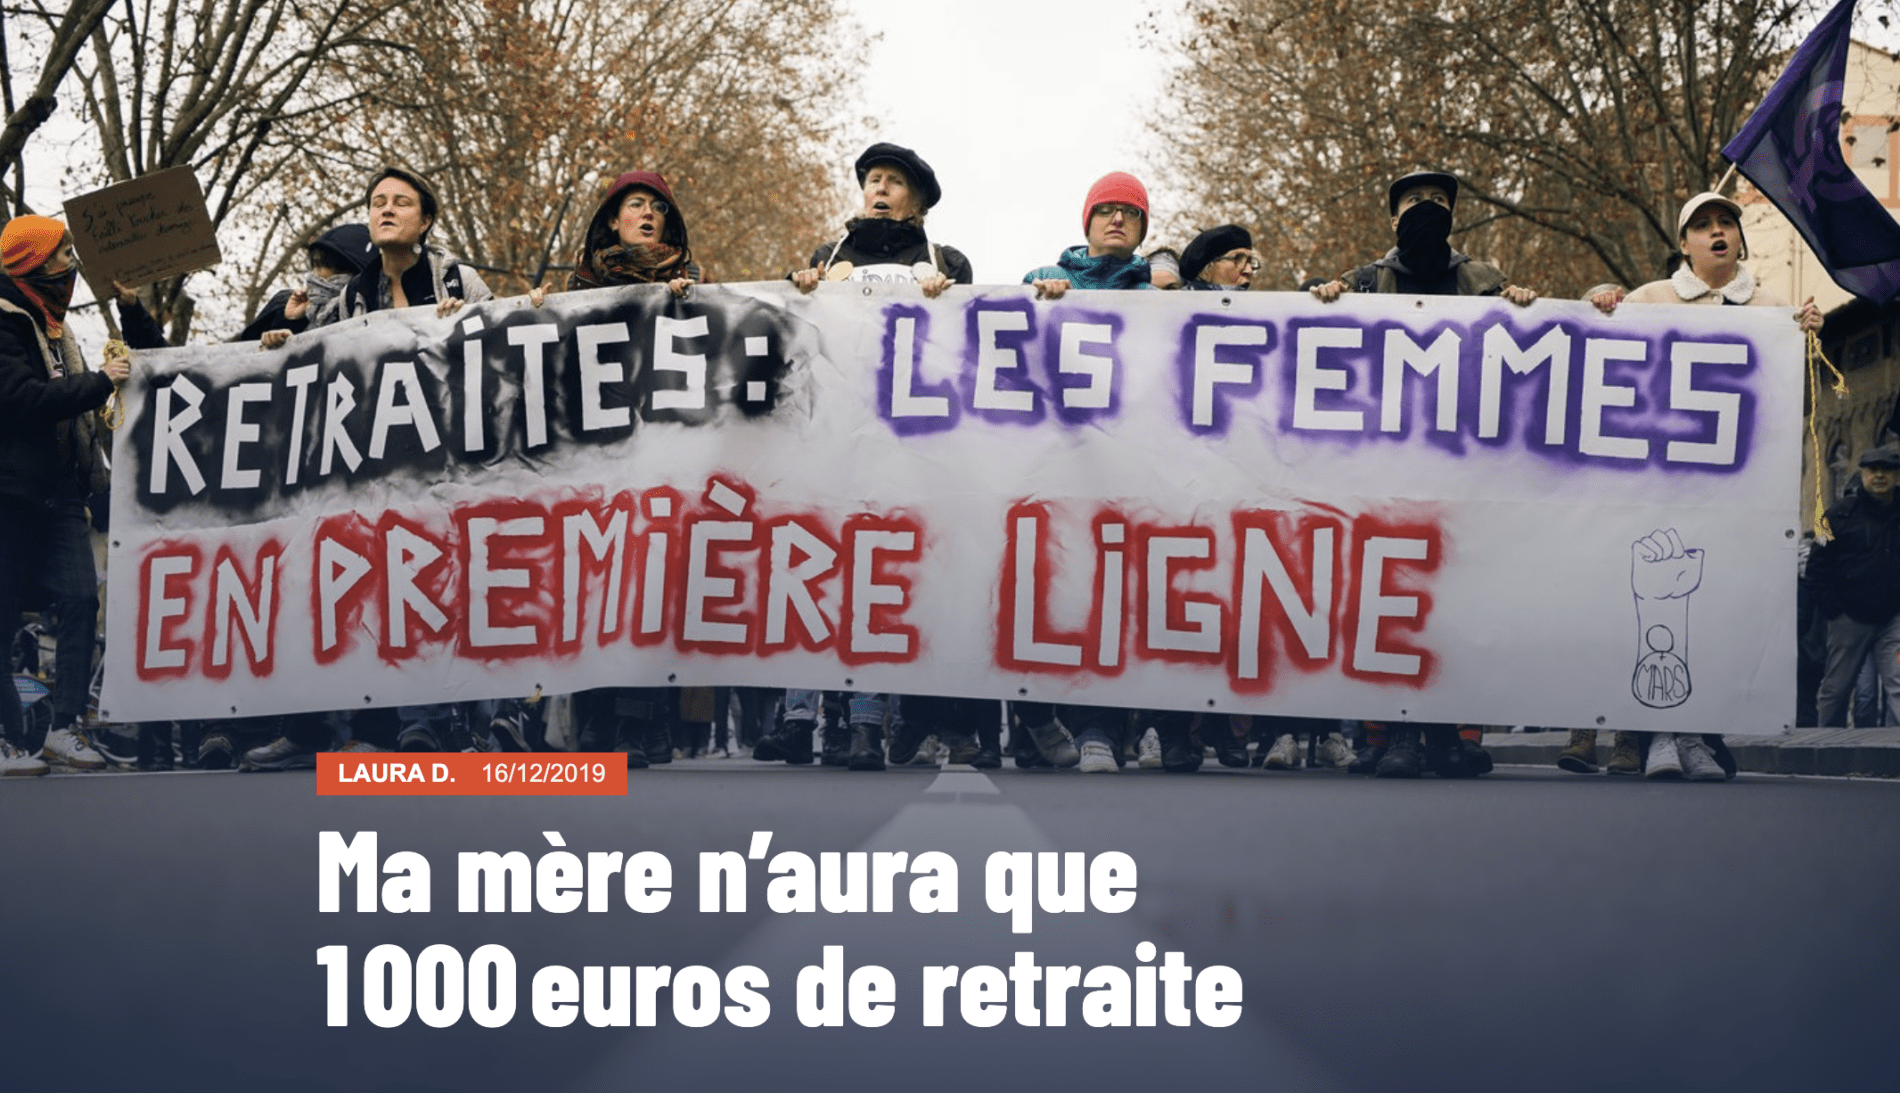 Photo en couleurs de femmes à la manifestation des retraites tenant une grande banderole sur laquelle est inscrit "retraites : femmes en première ligne"